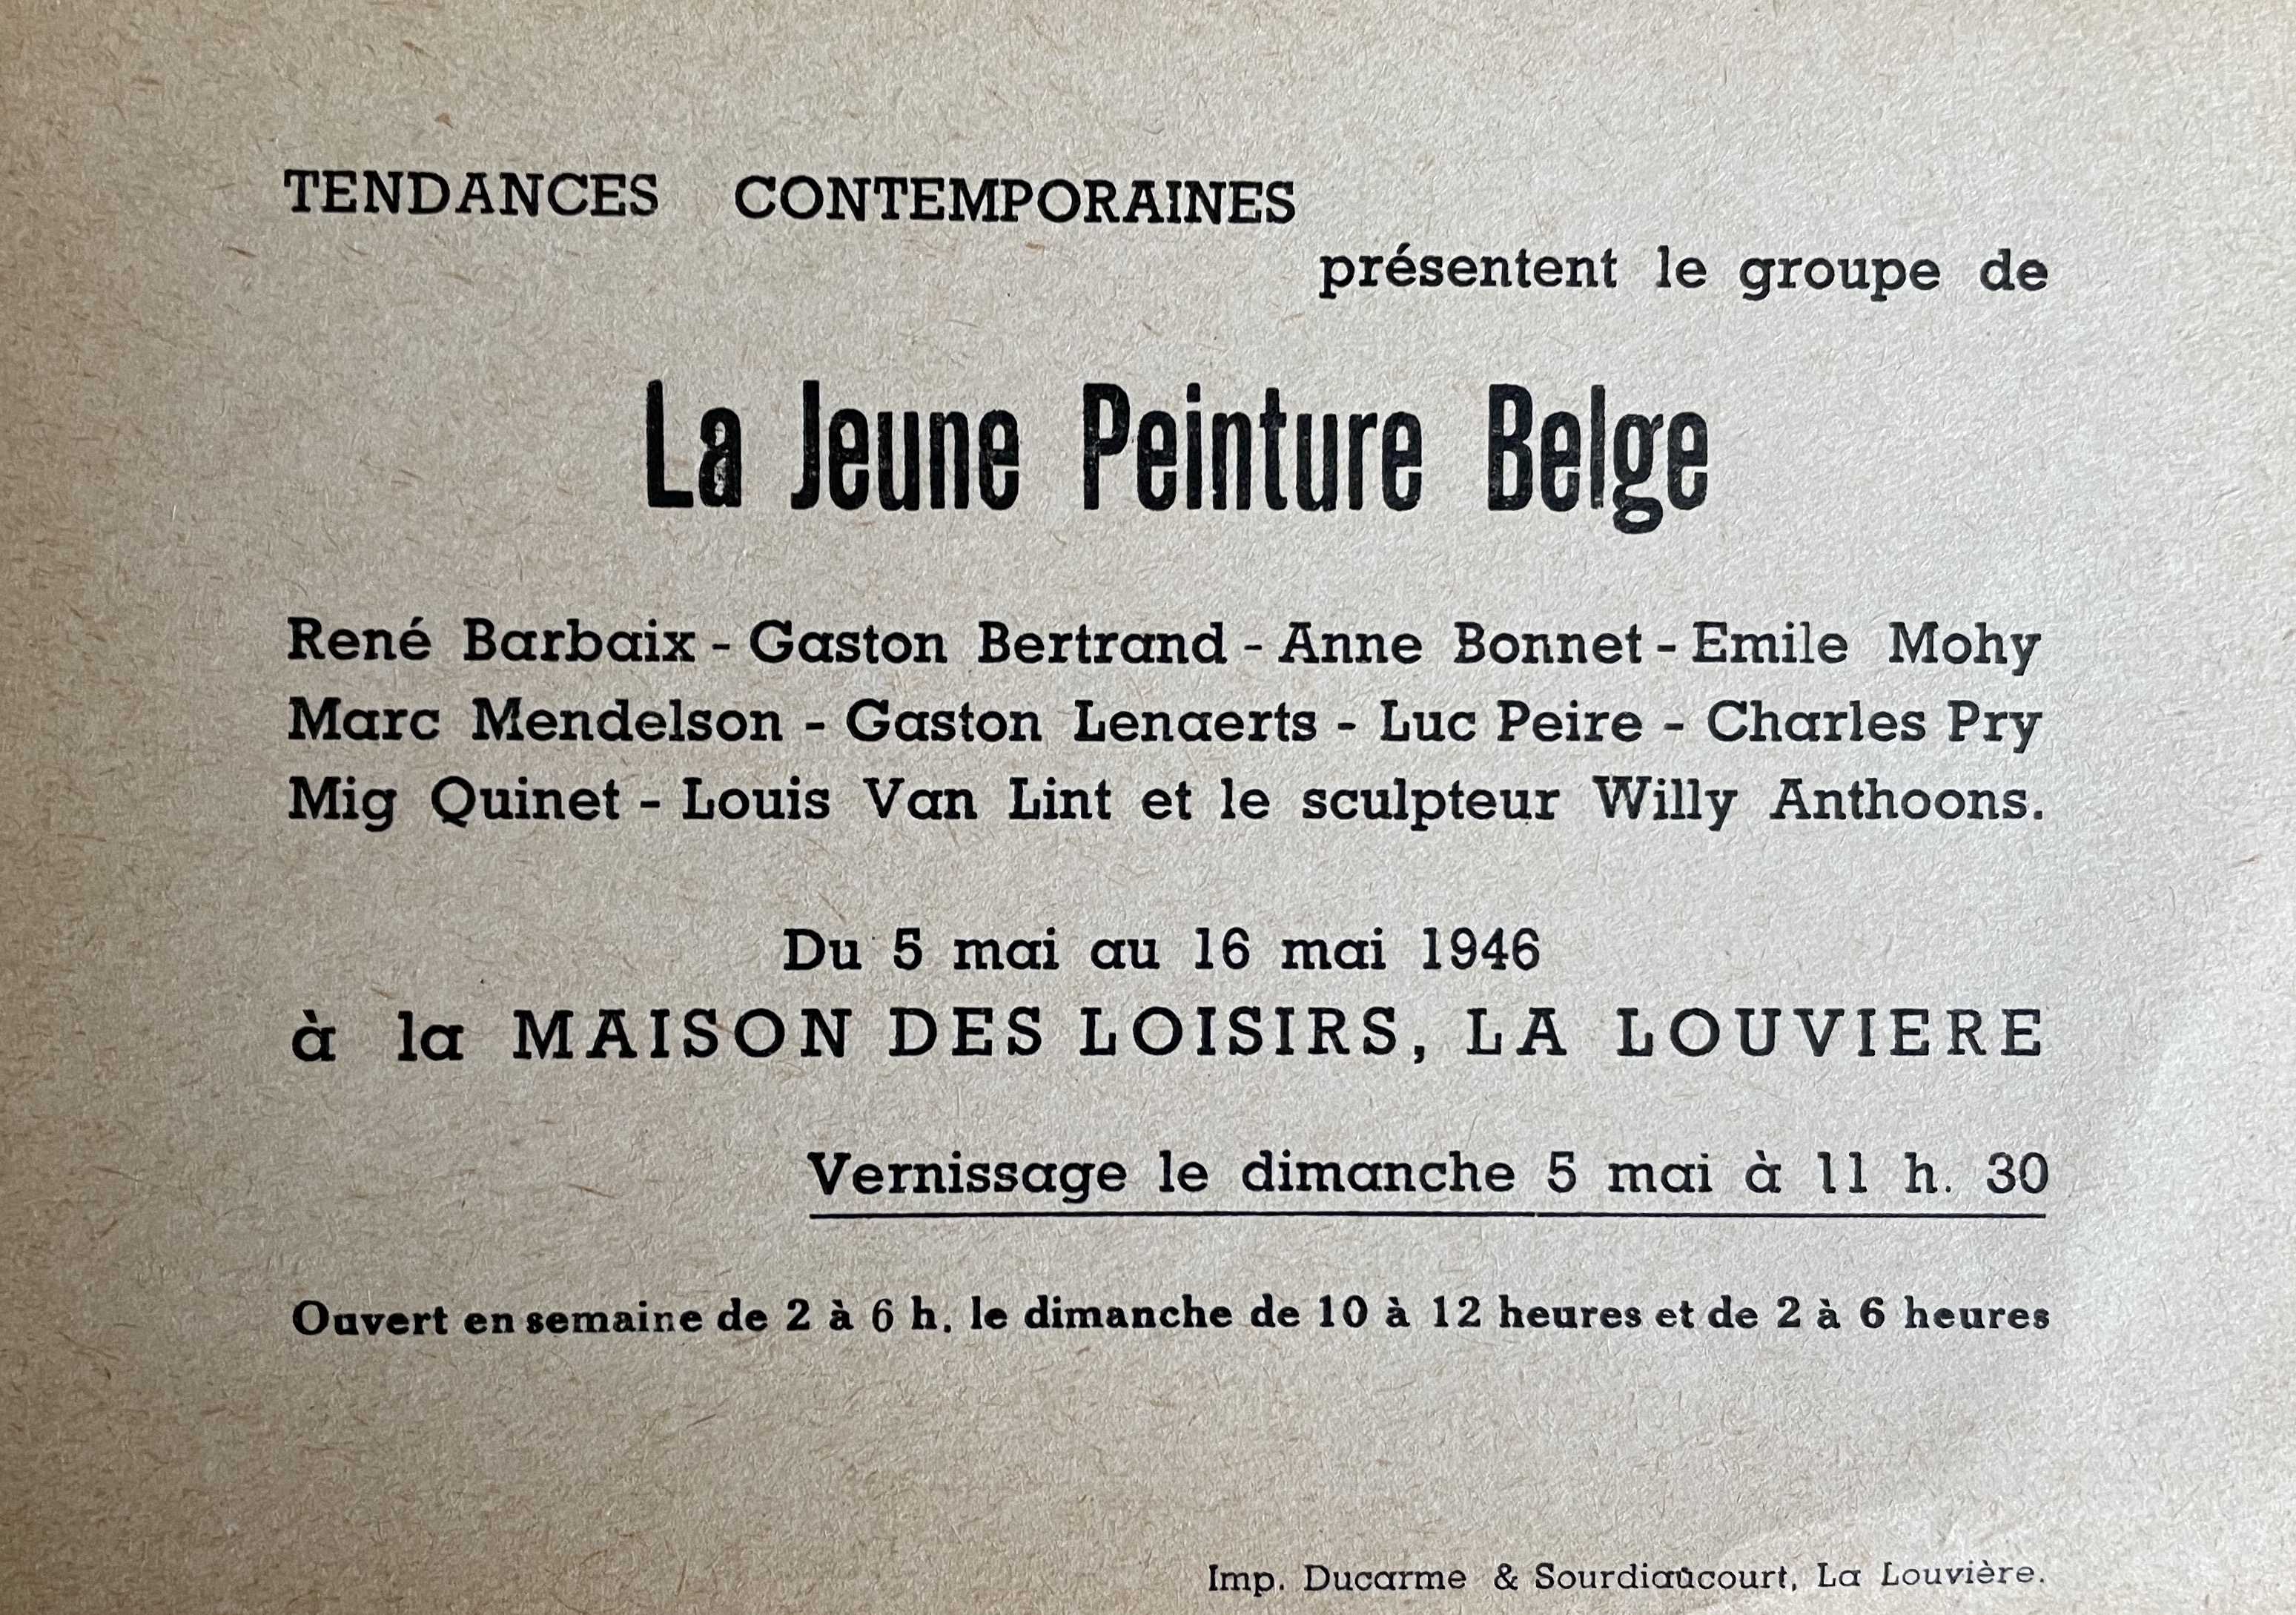 La Jeune Peinture Belge, Tendances contemporaines, La Louvière, 1946